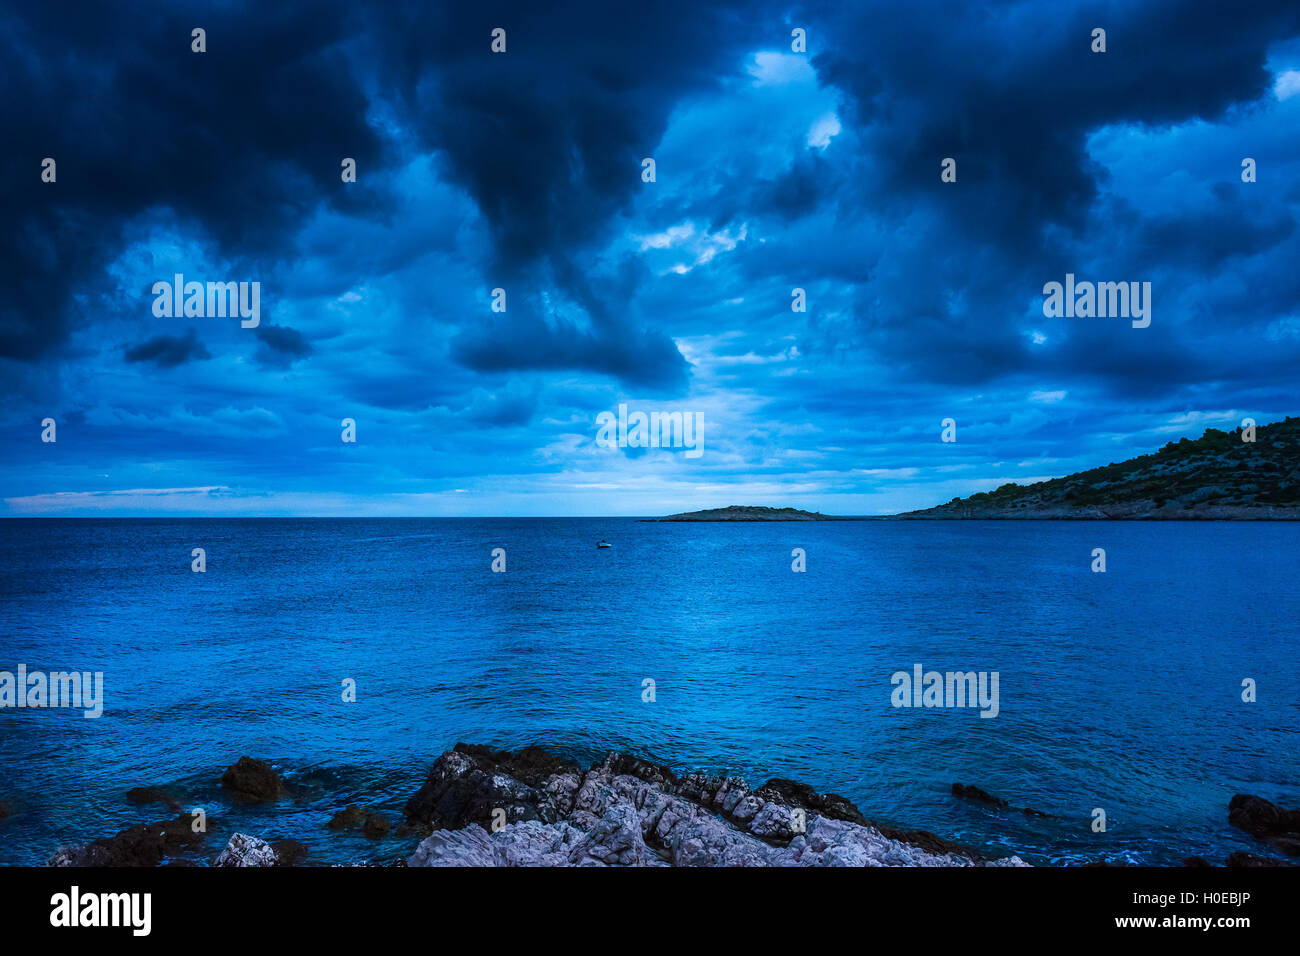 Colorful landscape photo of the Adriatic Sea Croatia Stock Photo